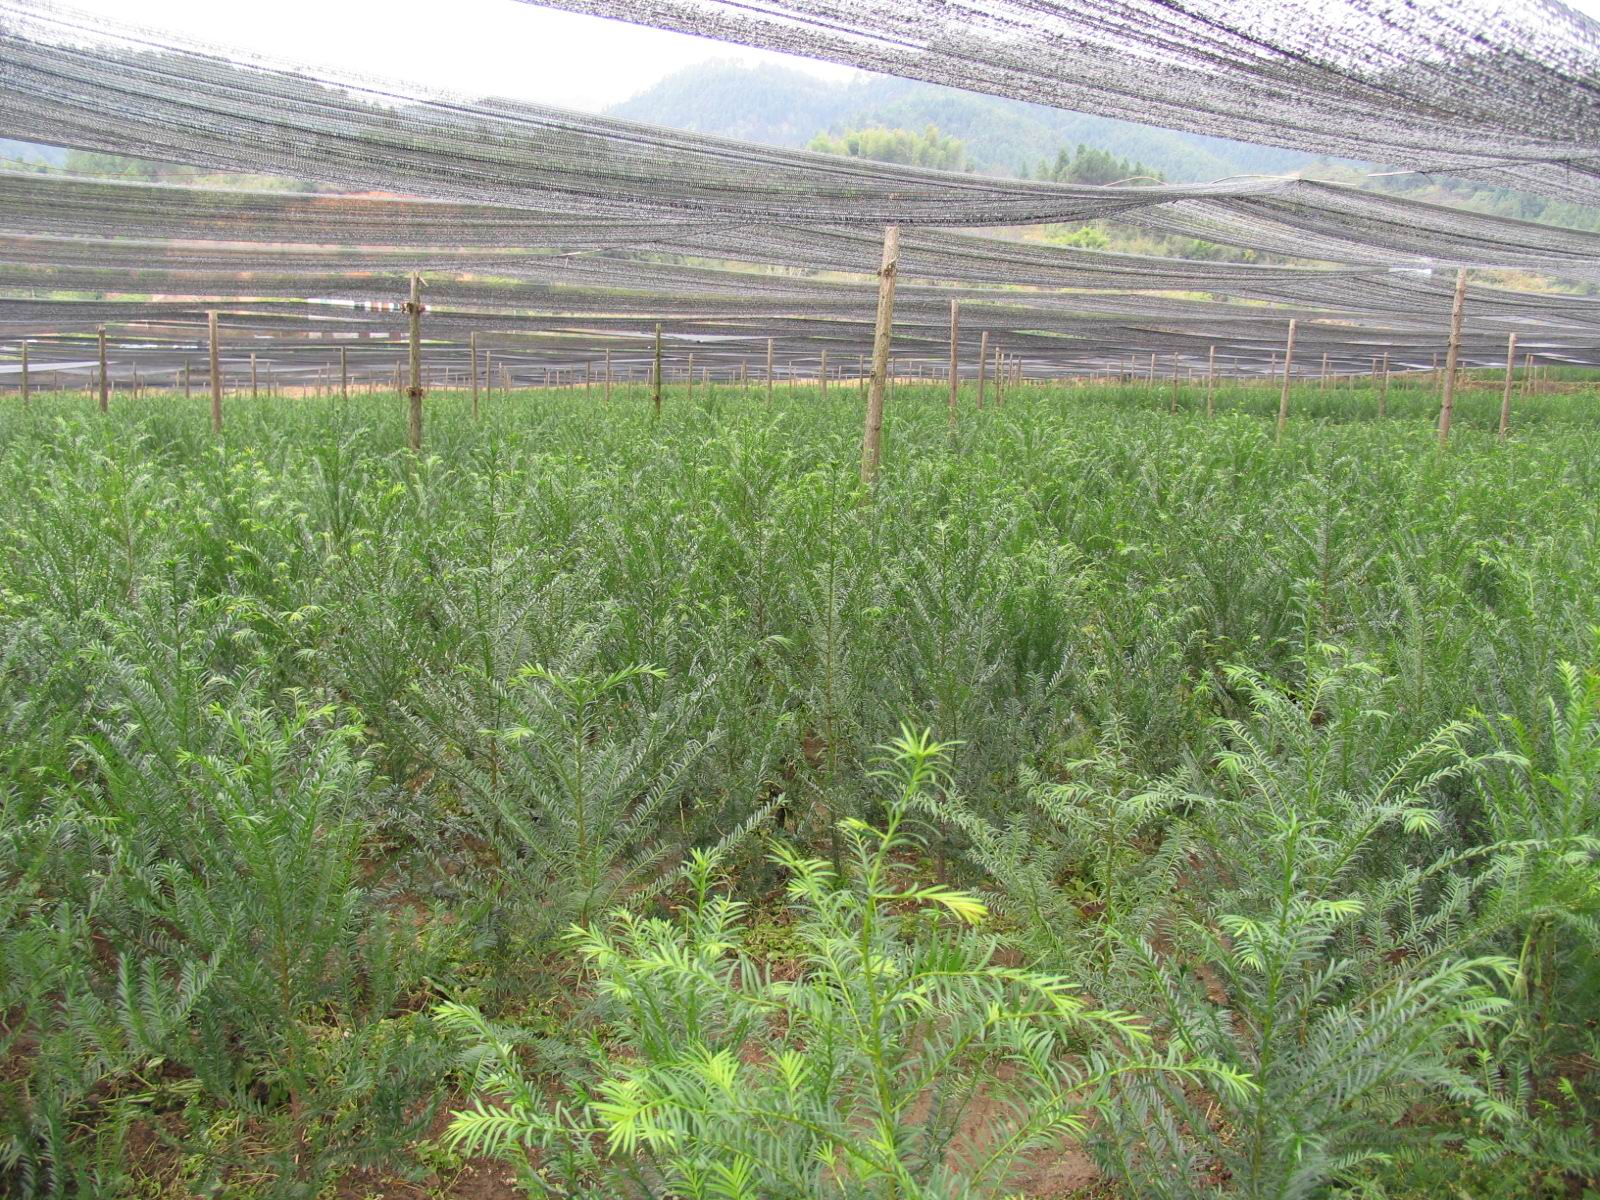 冷凉地区云南红豆杉人工幼林速生丰产栽培技术